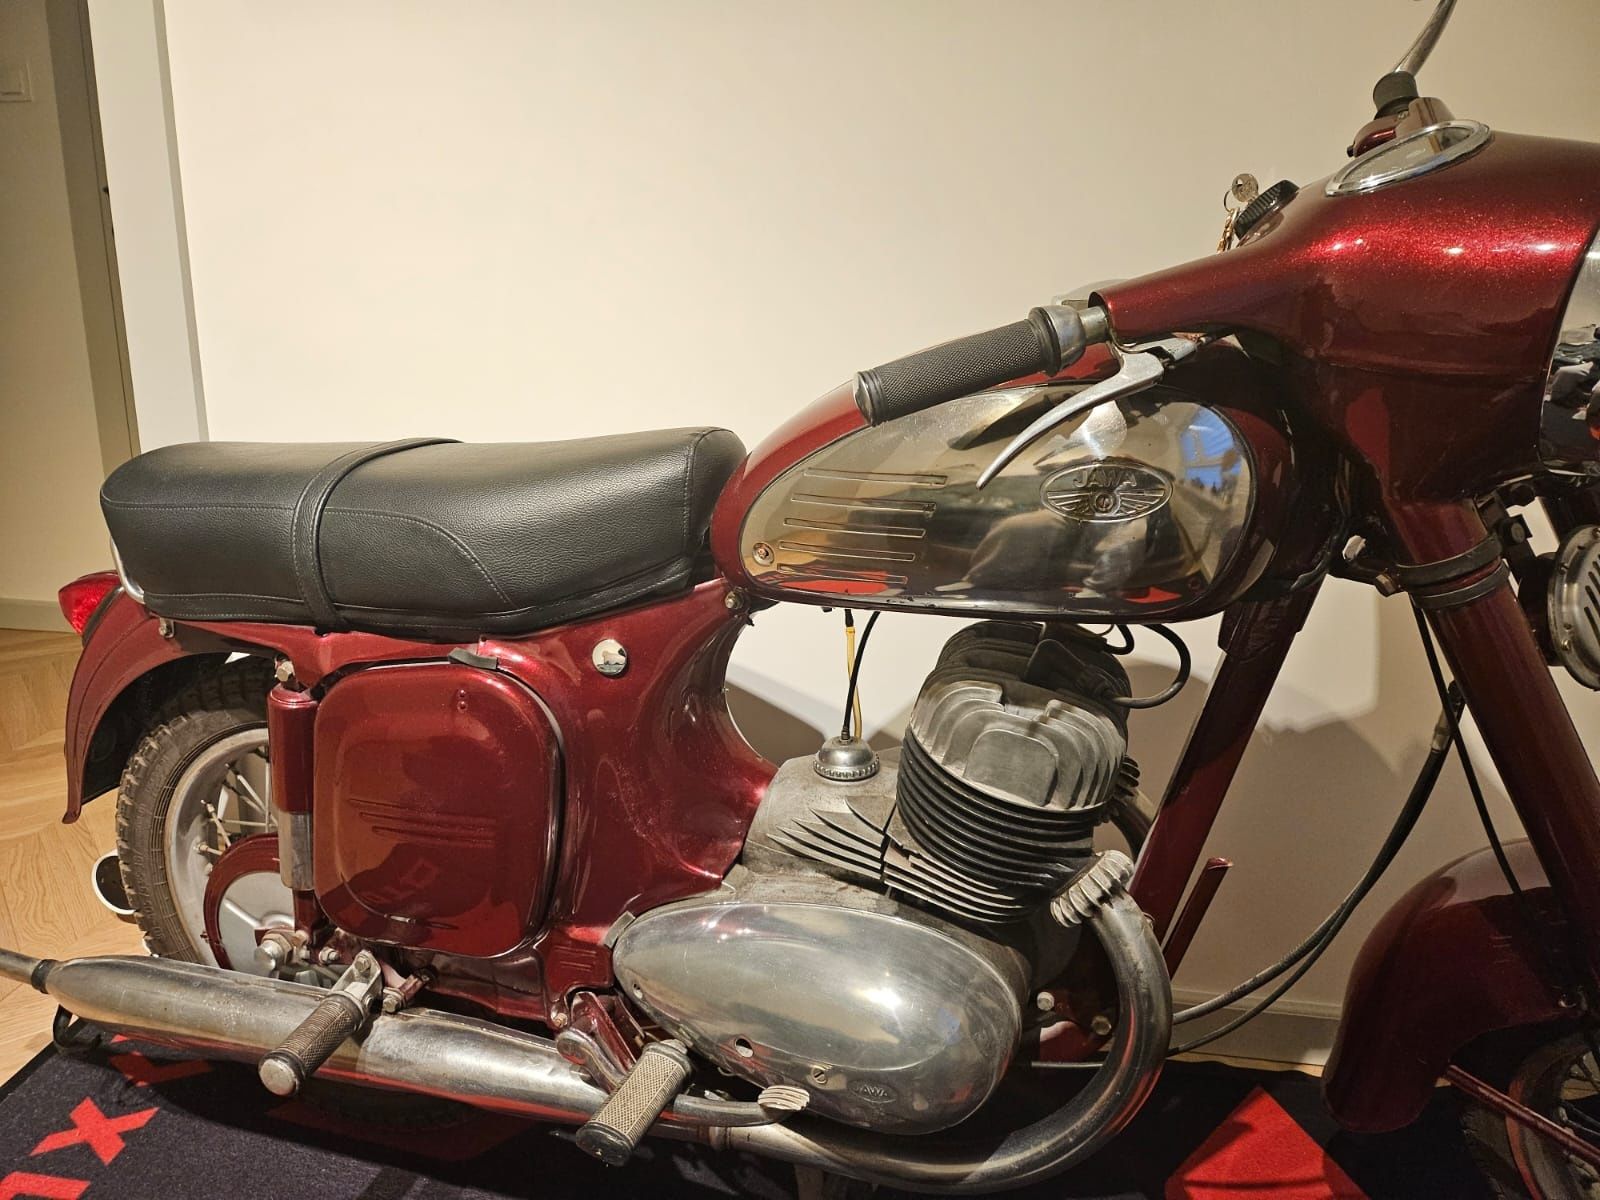 Perełka Jawa 350 z 1964r